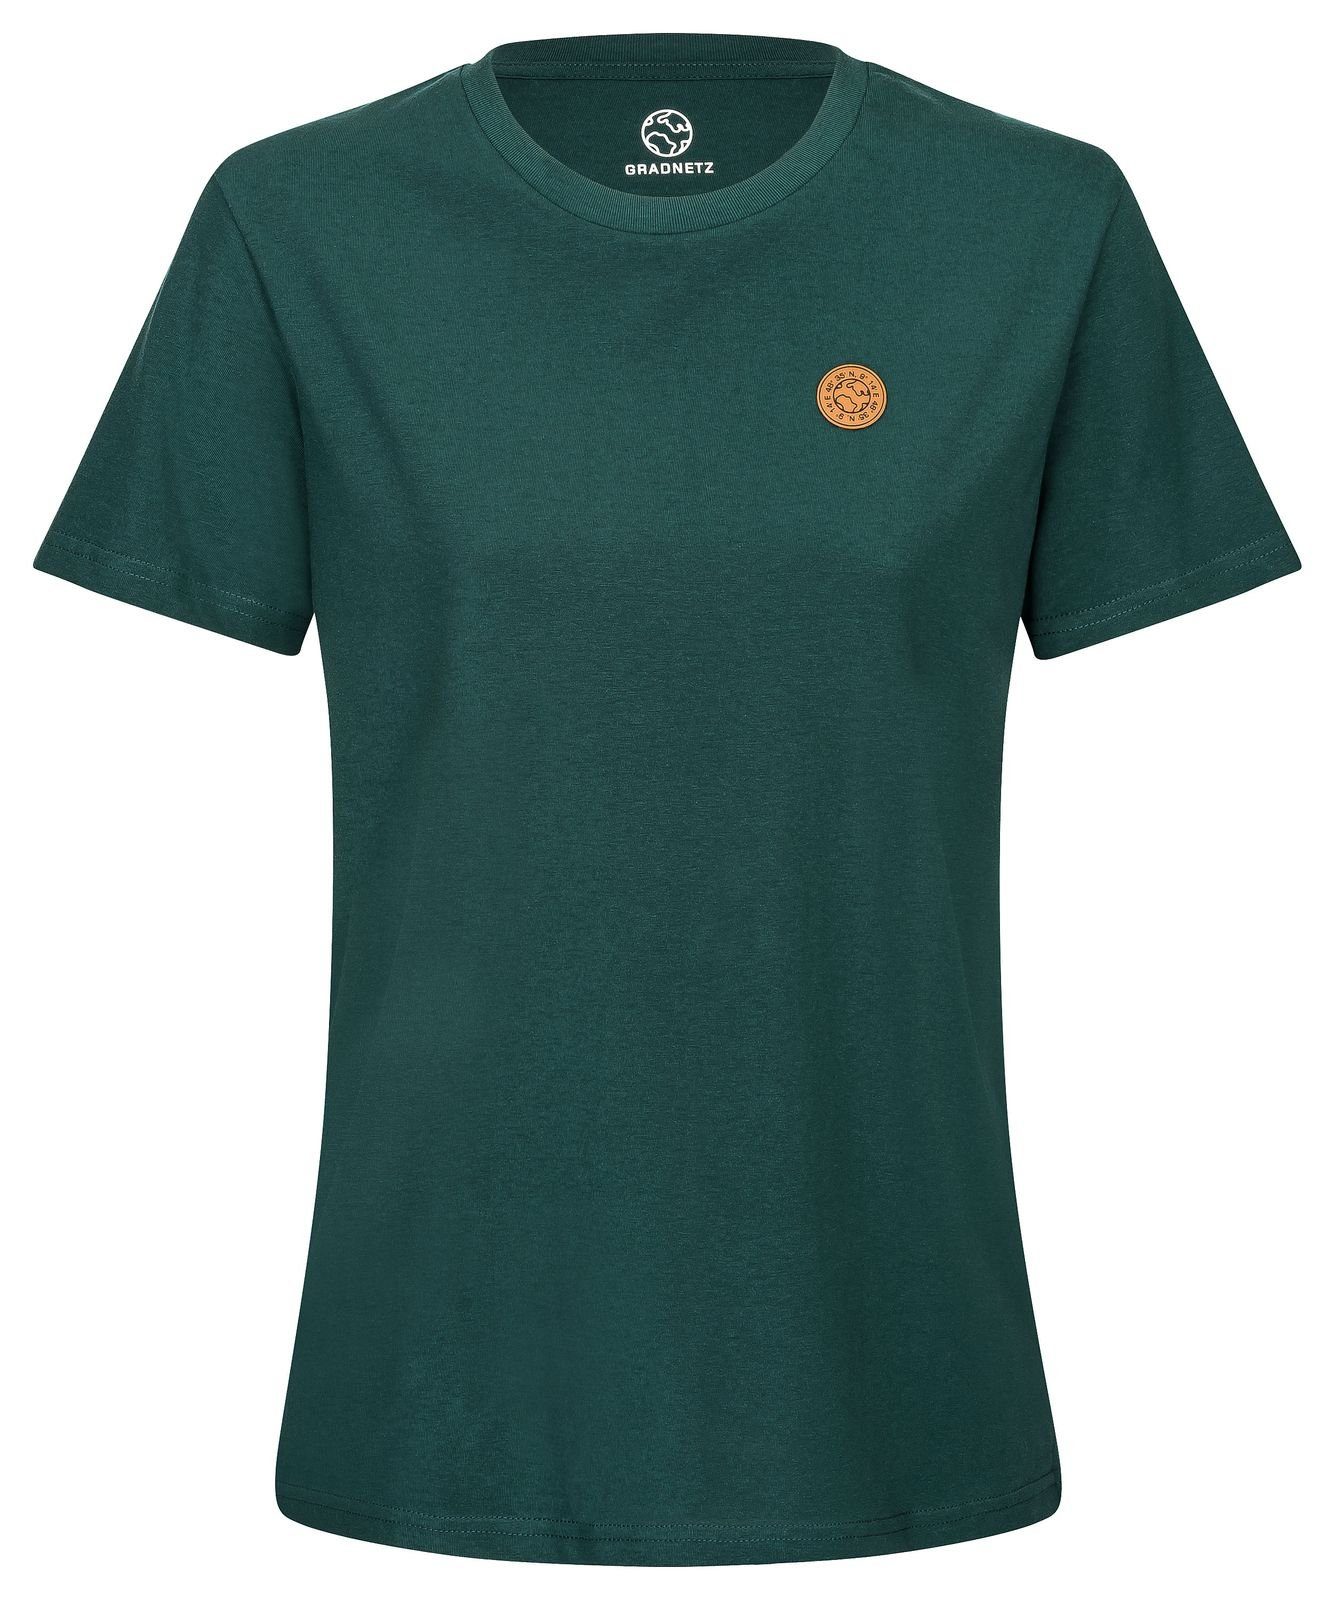 Gradnetz T-Shirt basic nachhaltig dunkelgrün 100% unisex fair leather & Biobaumwolle